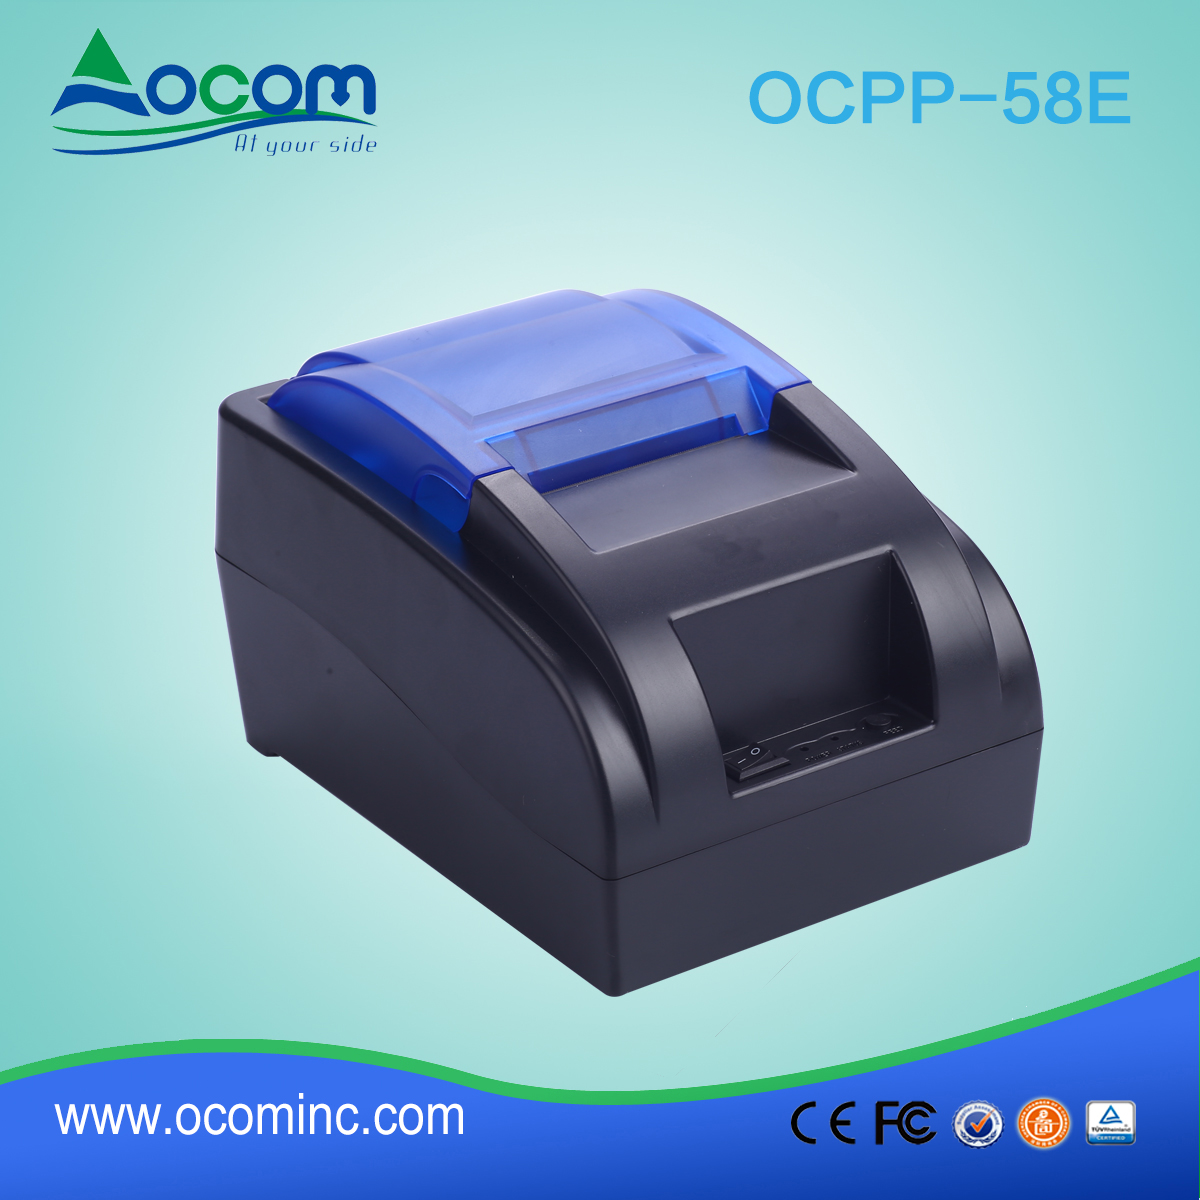 OCPP-58E-China hizo impresora POS barata de 58 mm con opción Bluetooth o WIFI